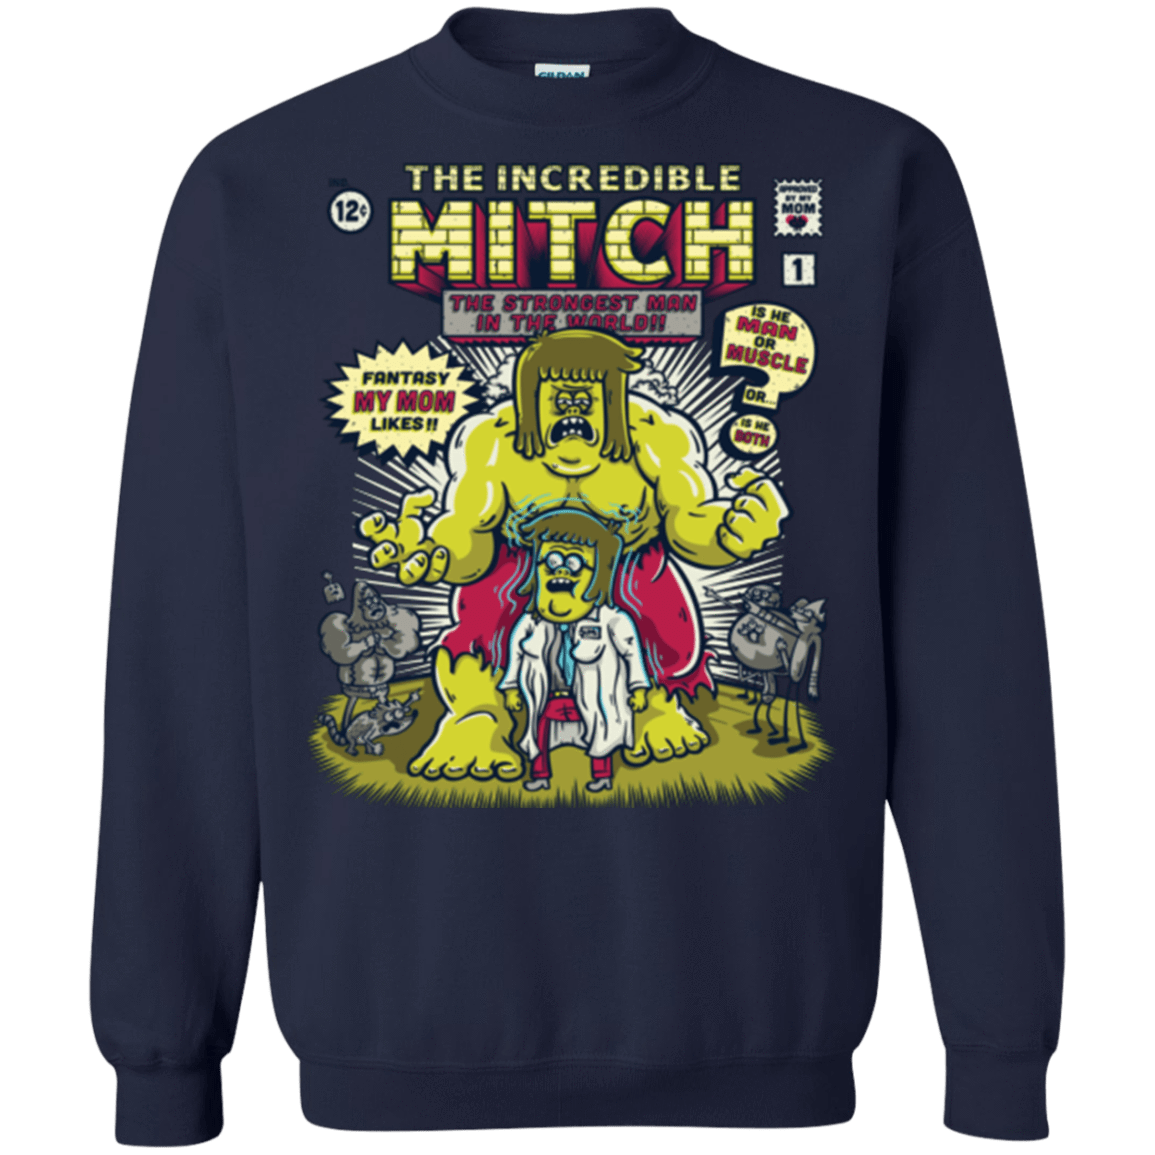 Sweatshirts Navy / Small Incredible Mitch Crewneck Sweatshirt